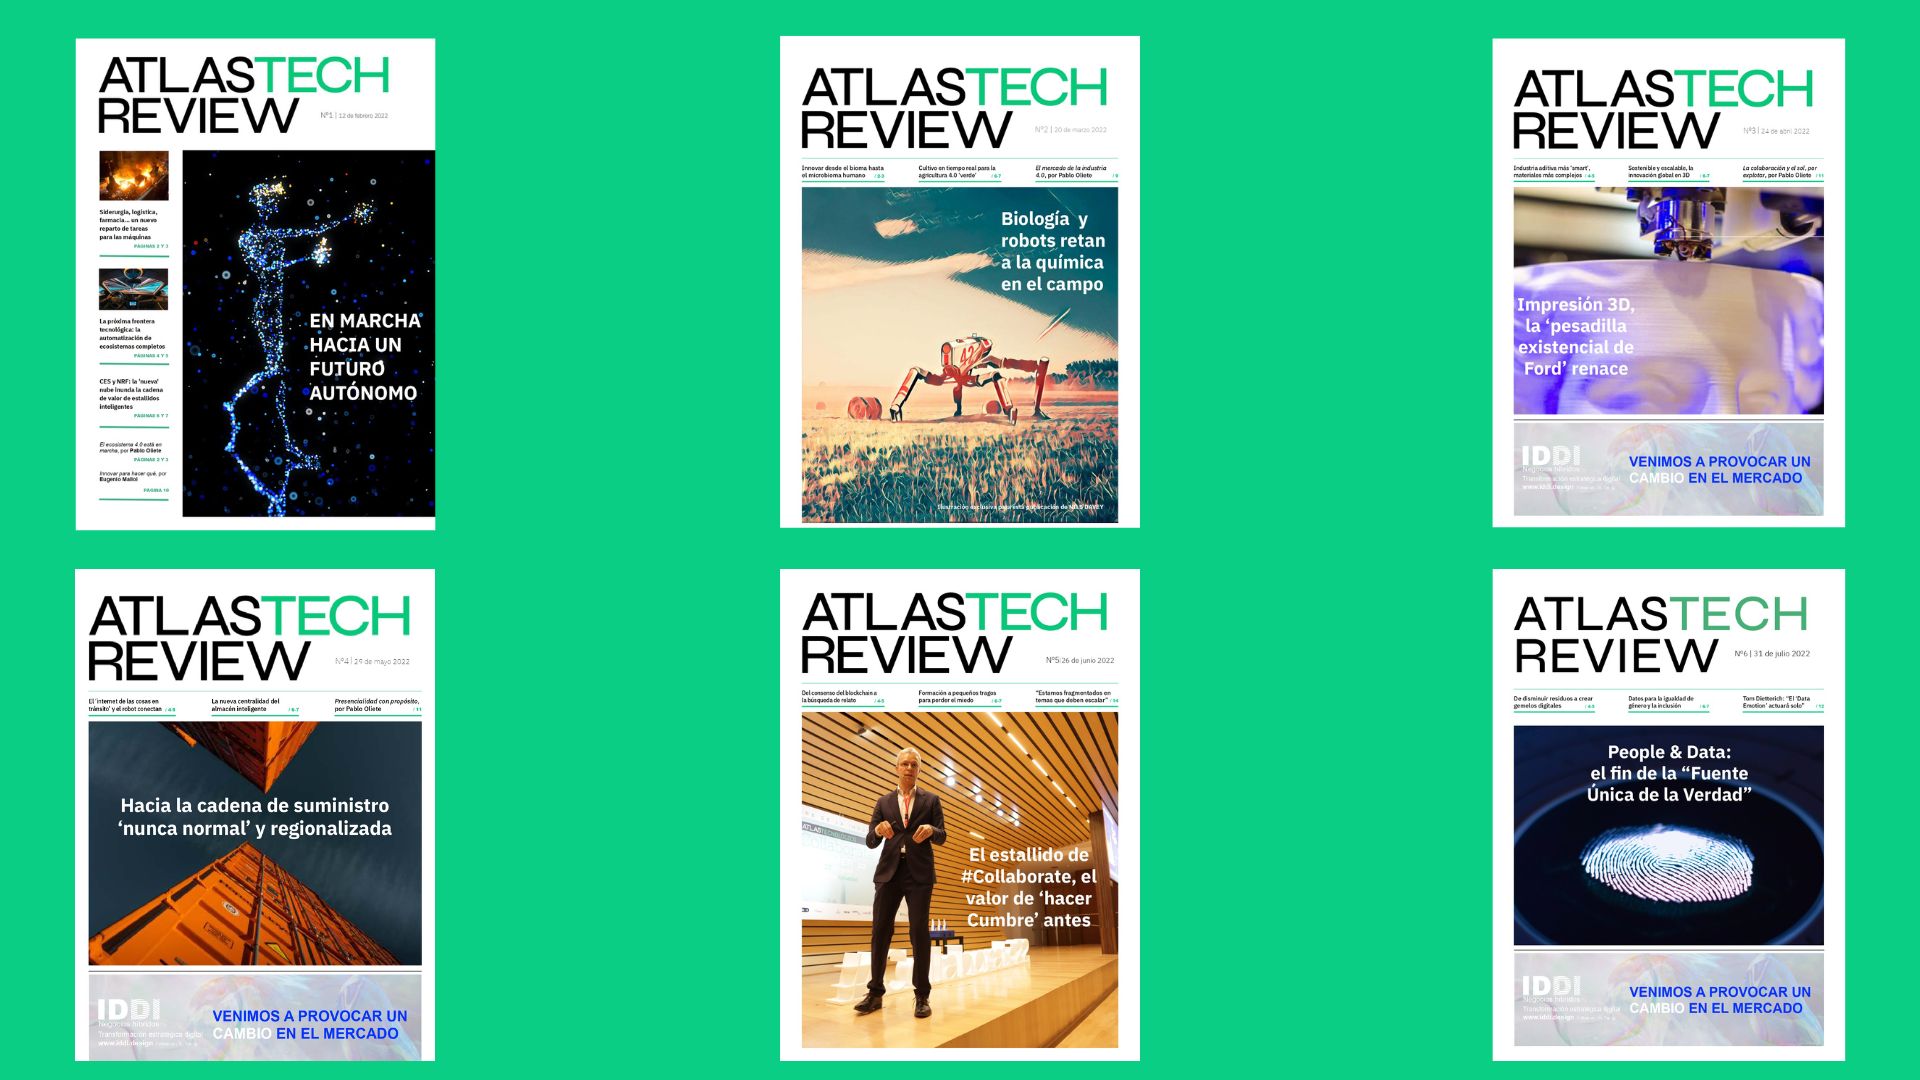 Un recorrido por las entregas de ATLASTECH REVIEW, la publicación mensual del ecosistema